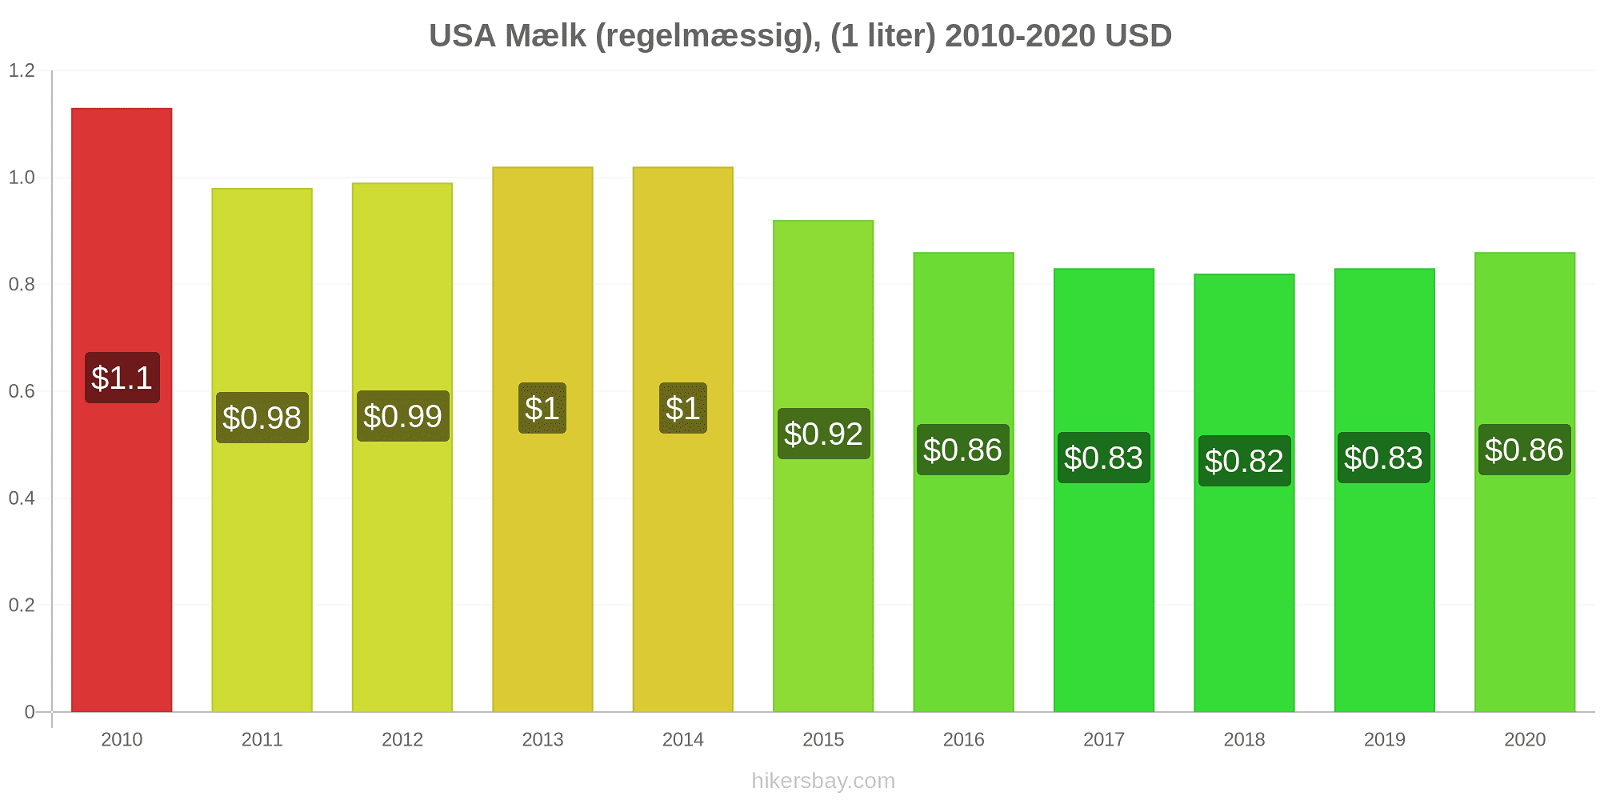 USA prisændringer Mælk (regelmæssig), (1 liter) hikersbay.com